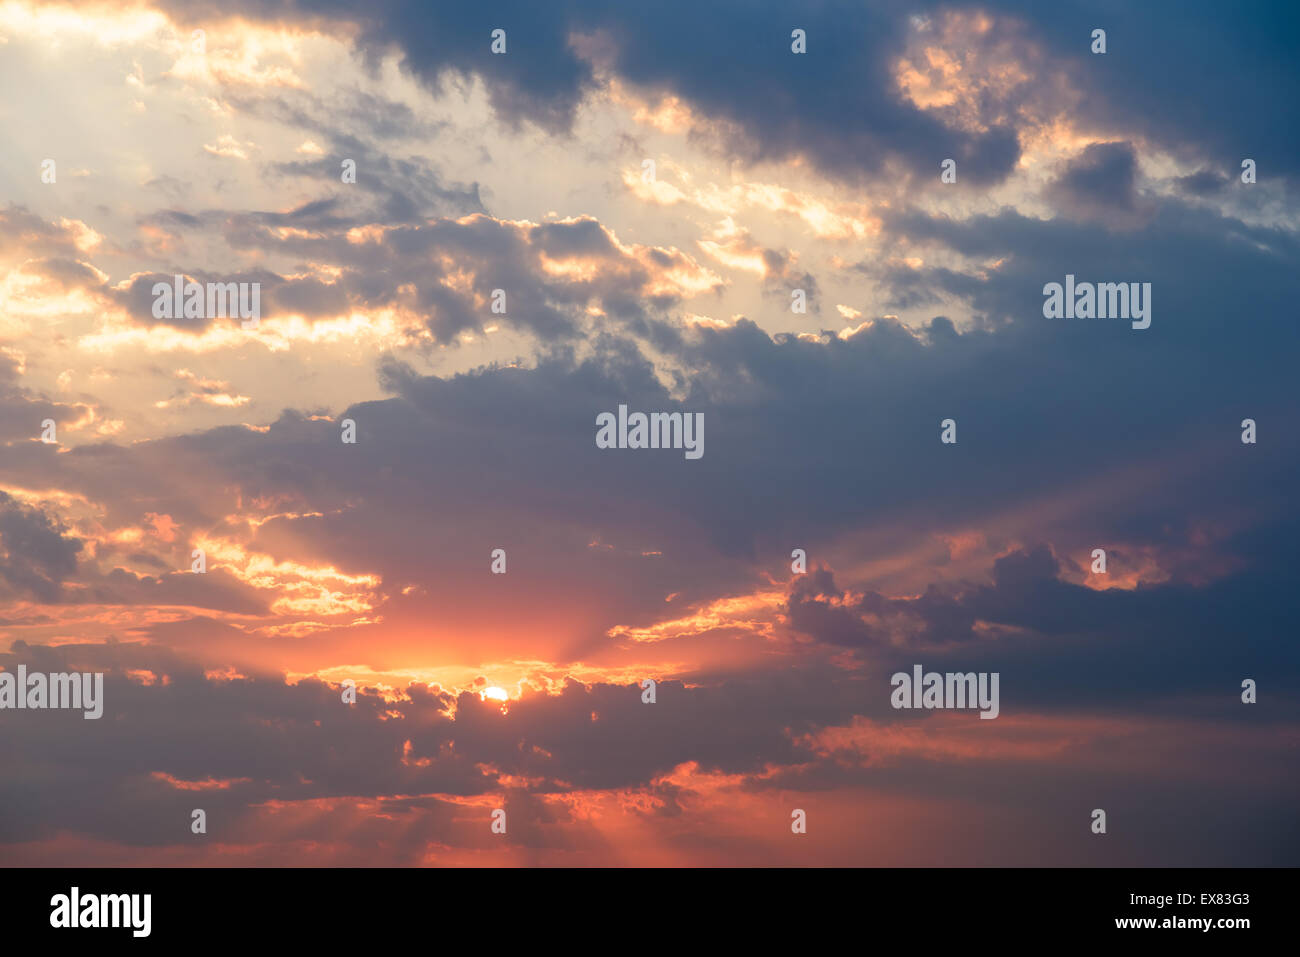 Estate tramonto con bellissimo cielo molto nuvoloso Foto Stock